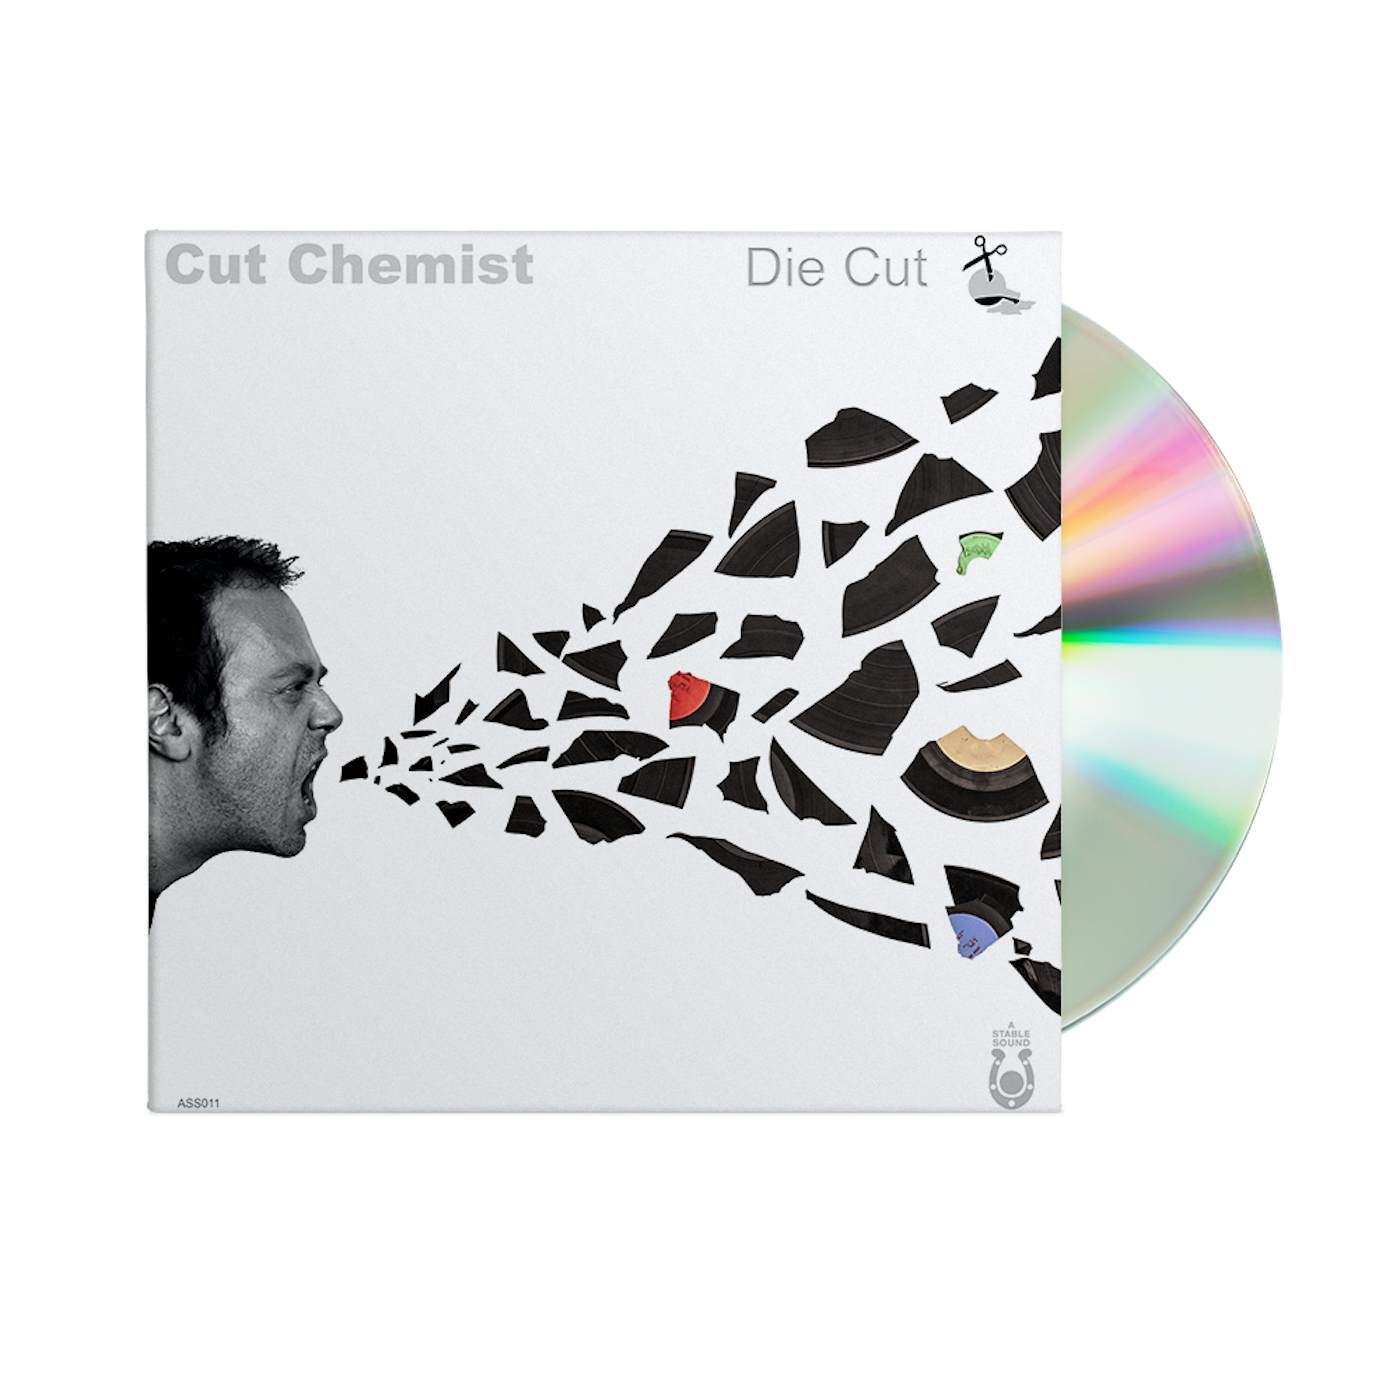 Cut Chemist Die Cut CD